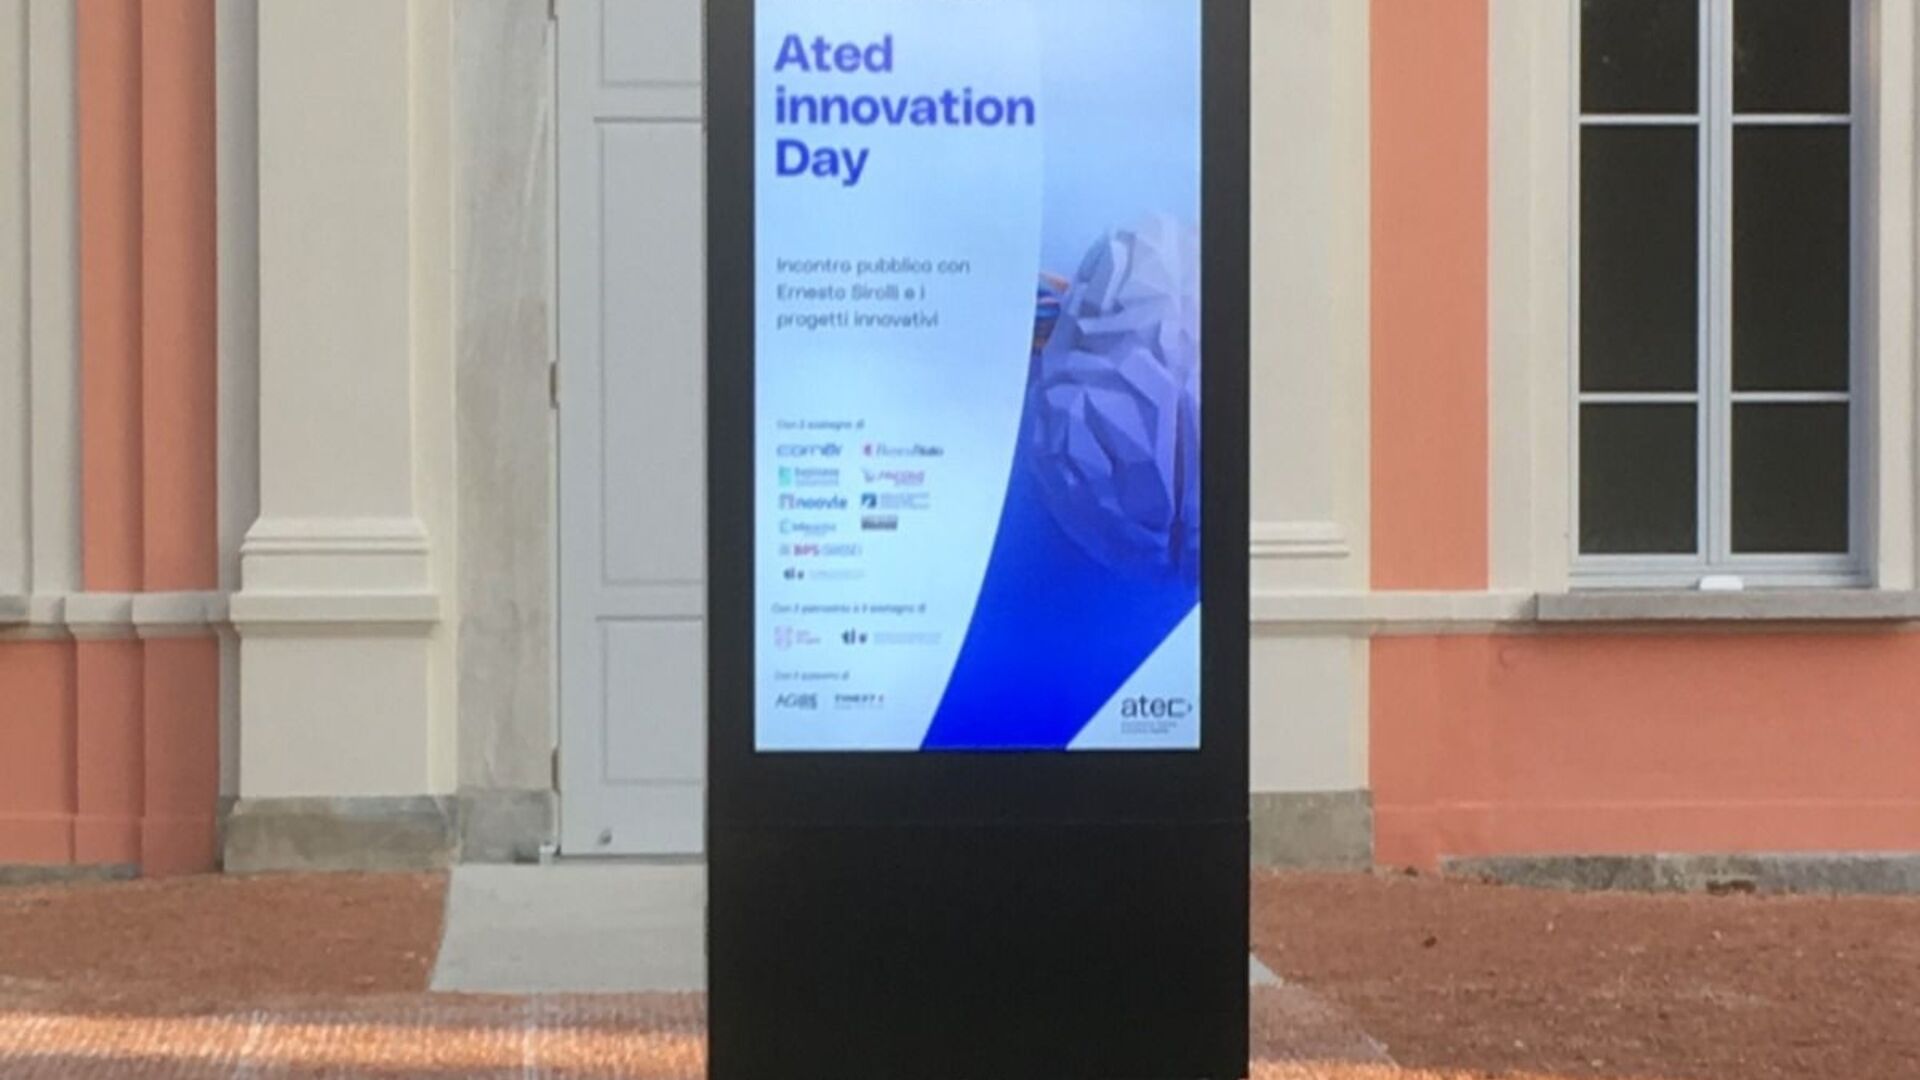 प्रोजेक्ट्स: ATED प्रोजेक्ट इनोवेशन स्पीड डेट का पोस्टर